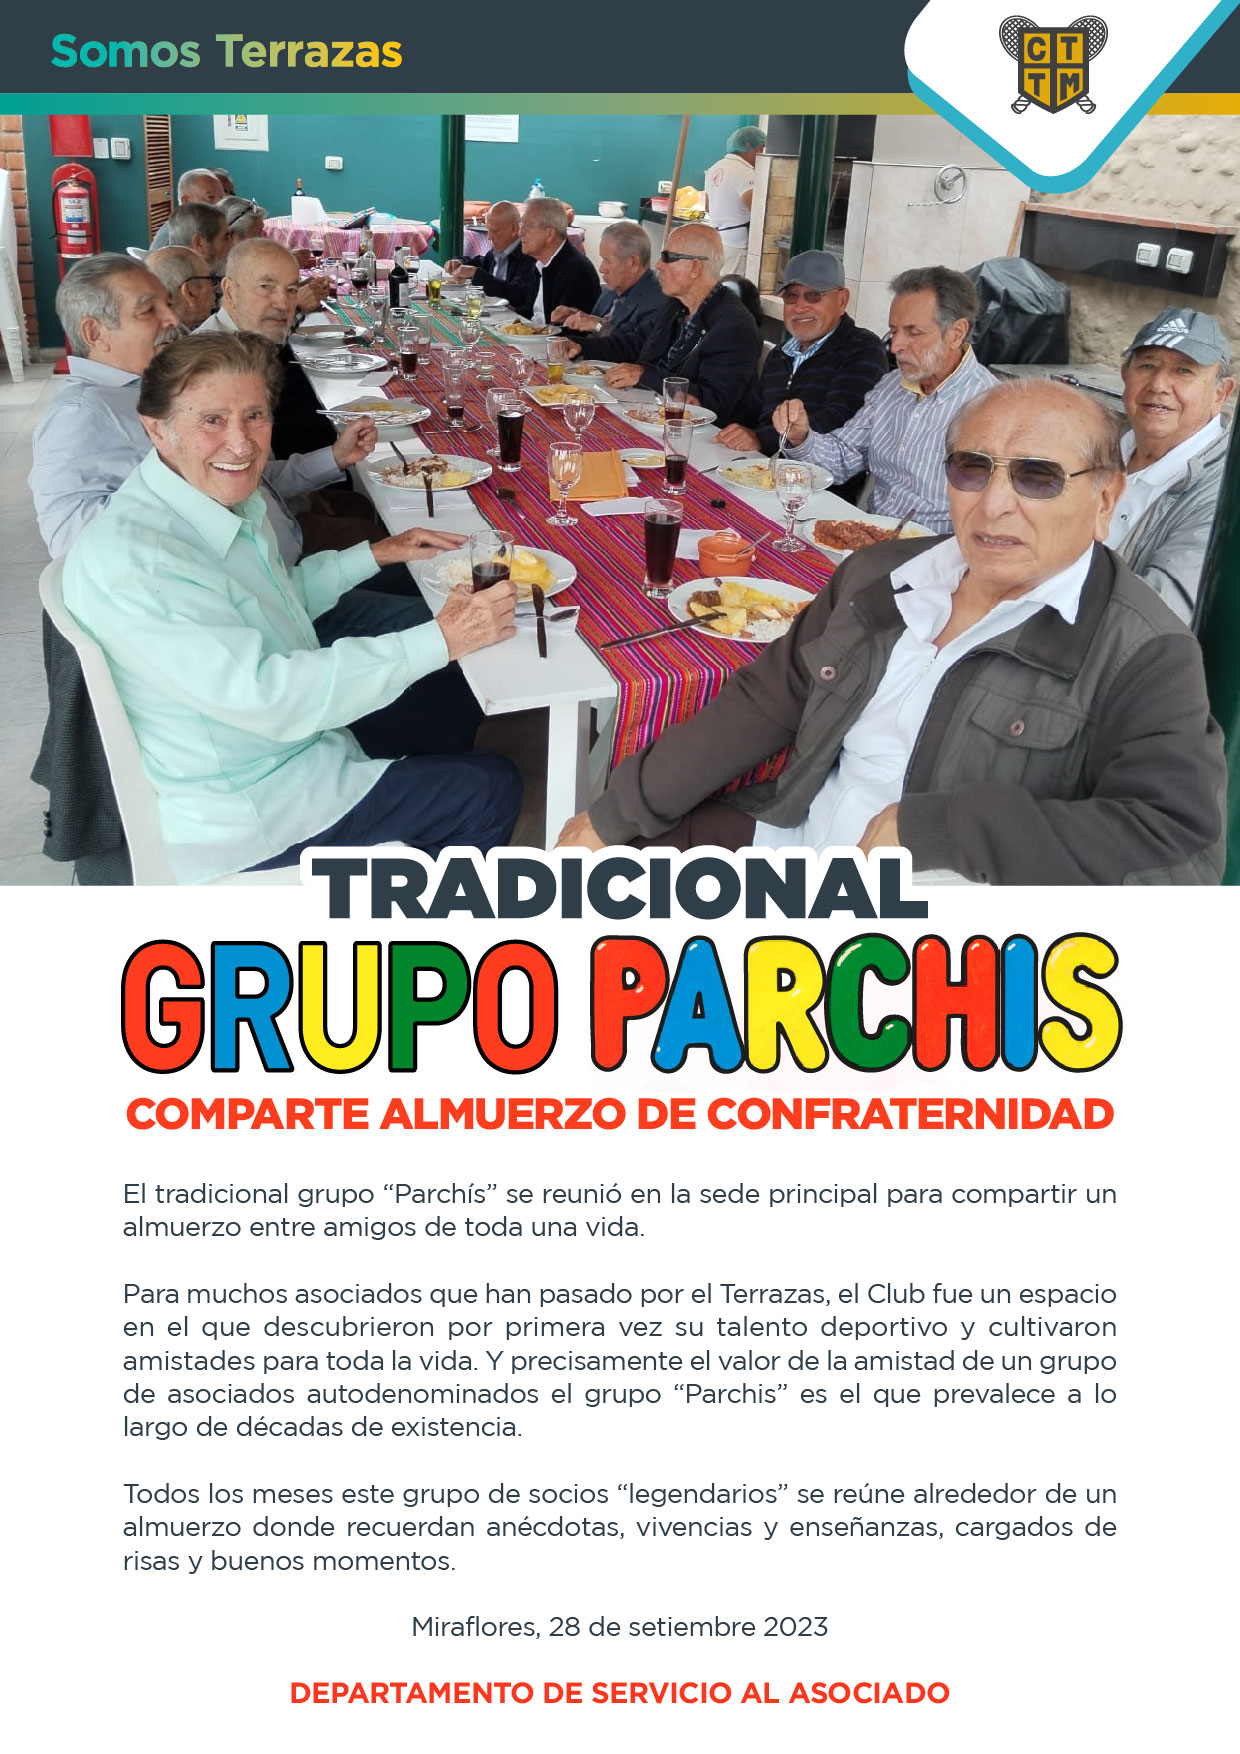  TRADICIONAL “GRUPO PARCHÍS”, COMPARTE ALMUERZO DE CONFRATERNIDAD